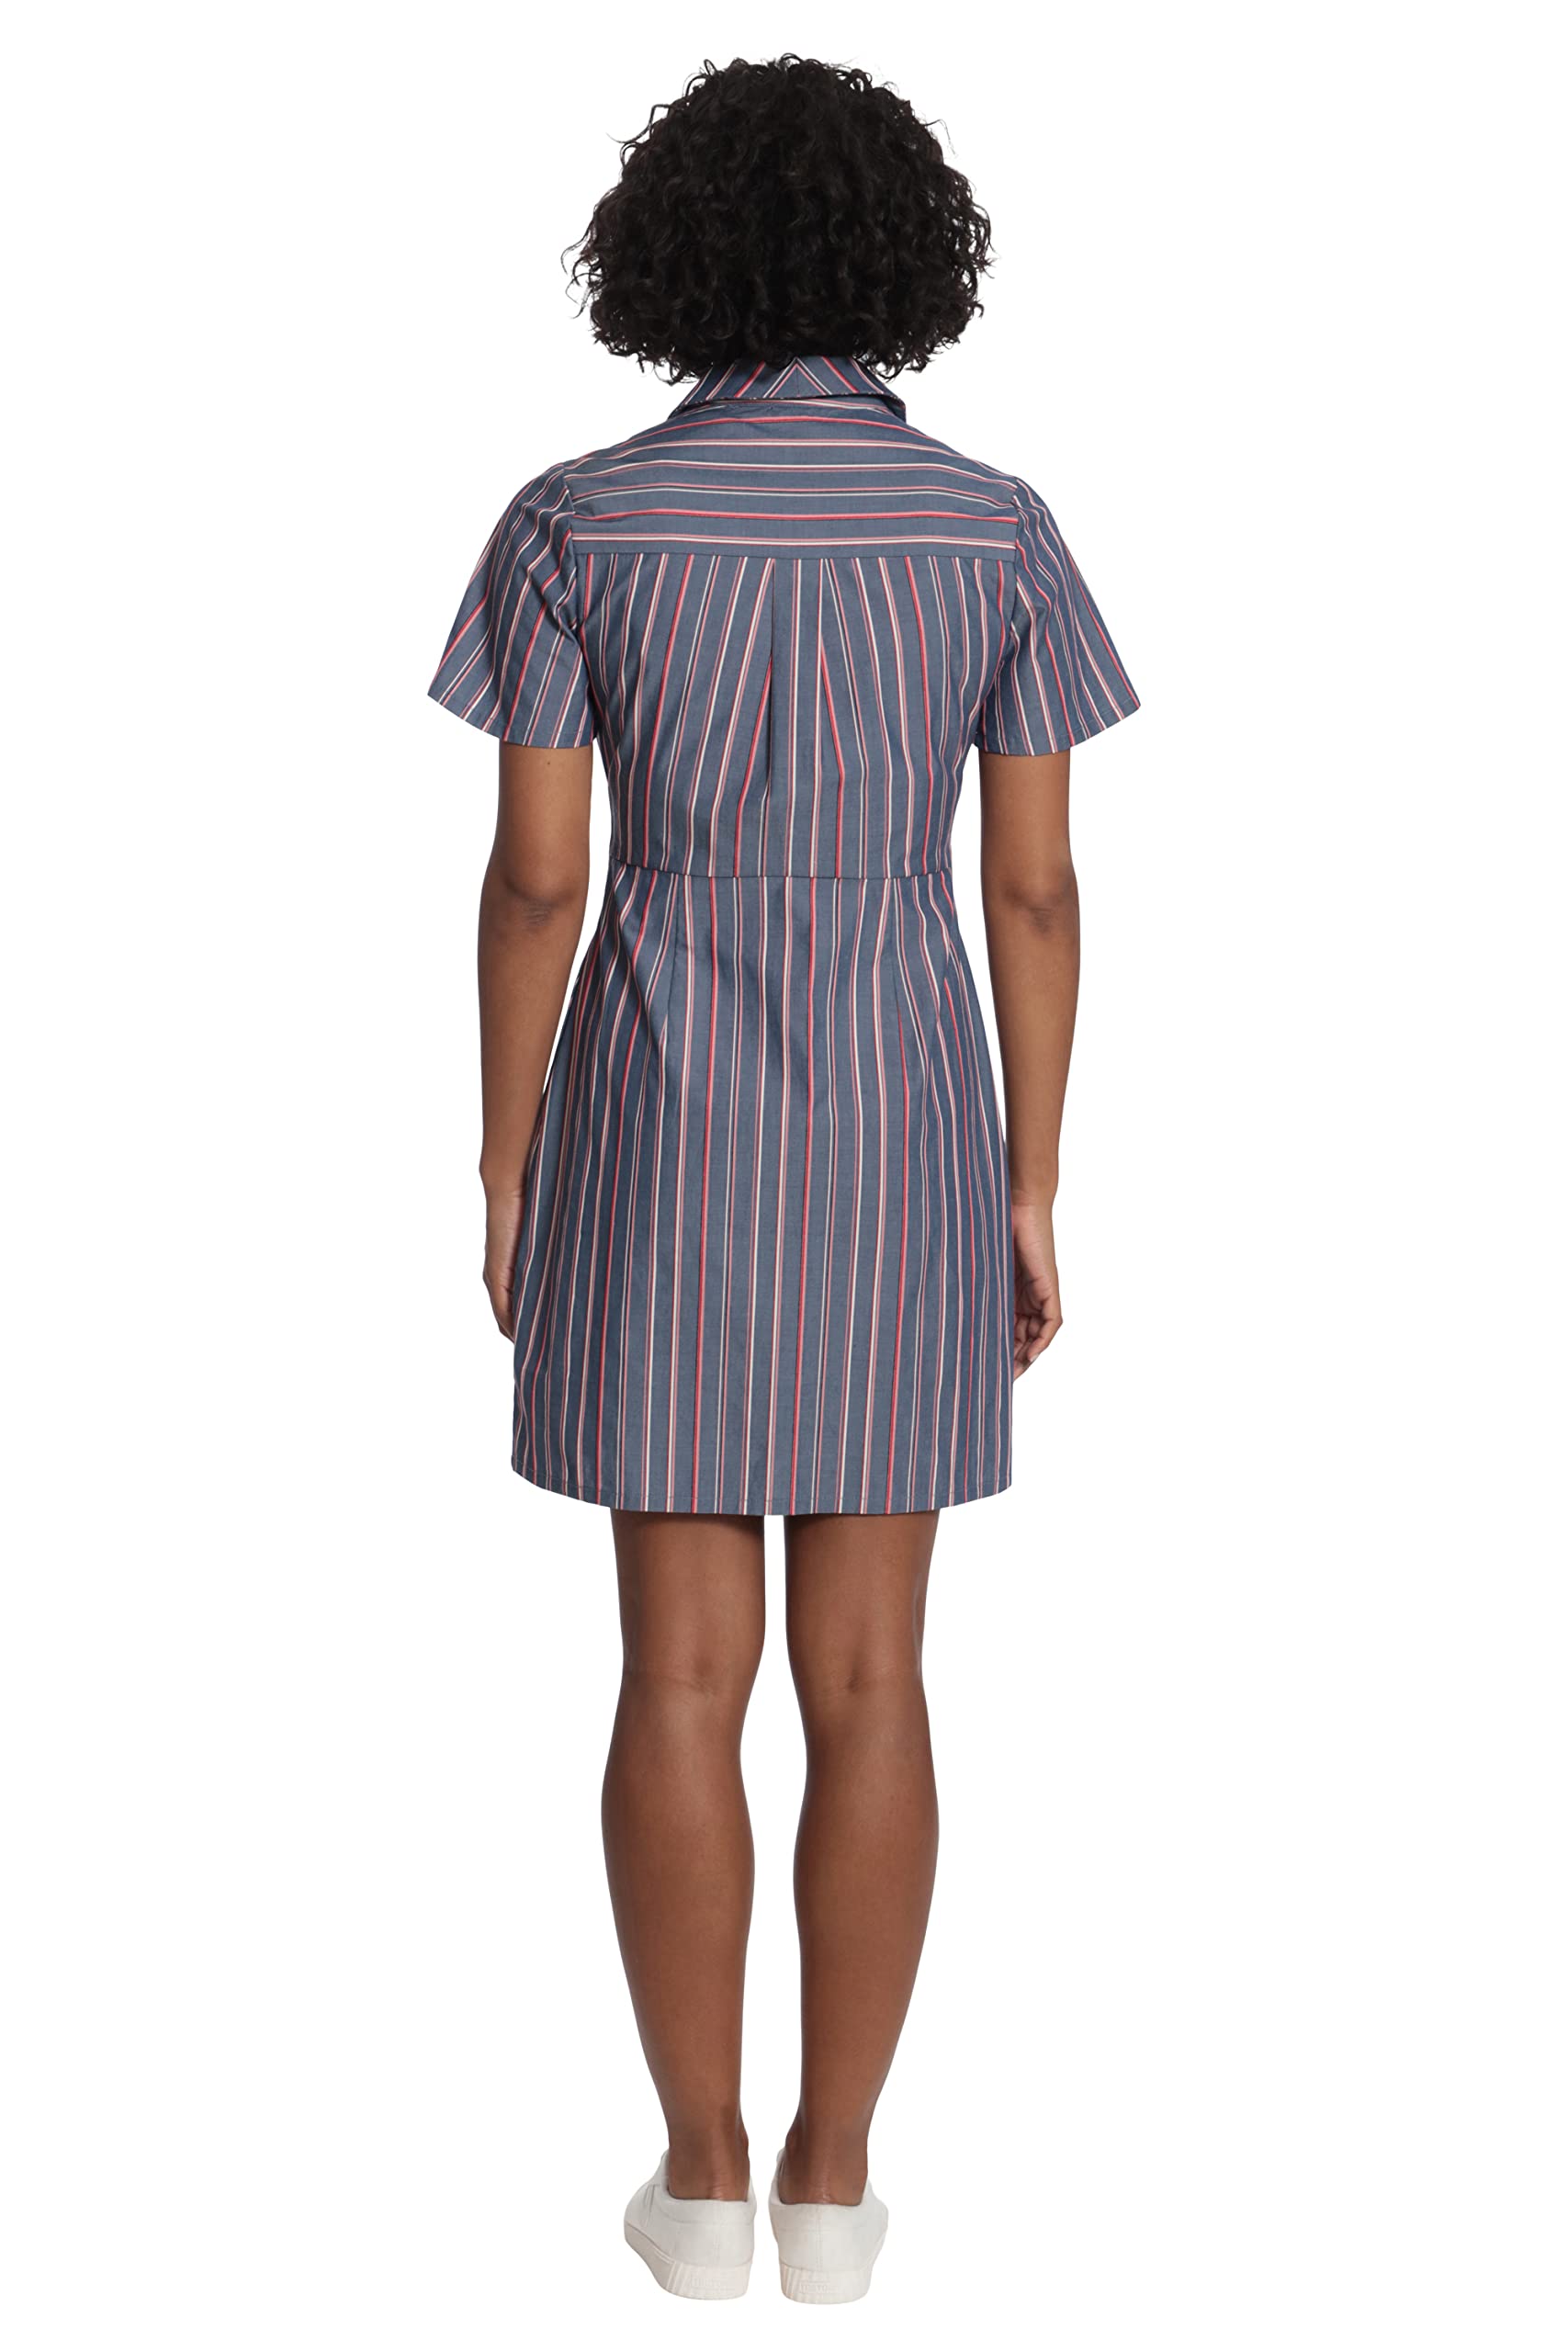 London Times Women's Short Sleeve Shirt Dress with Waist Tie